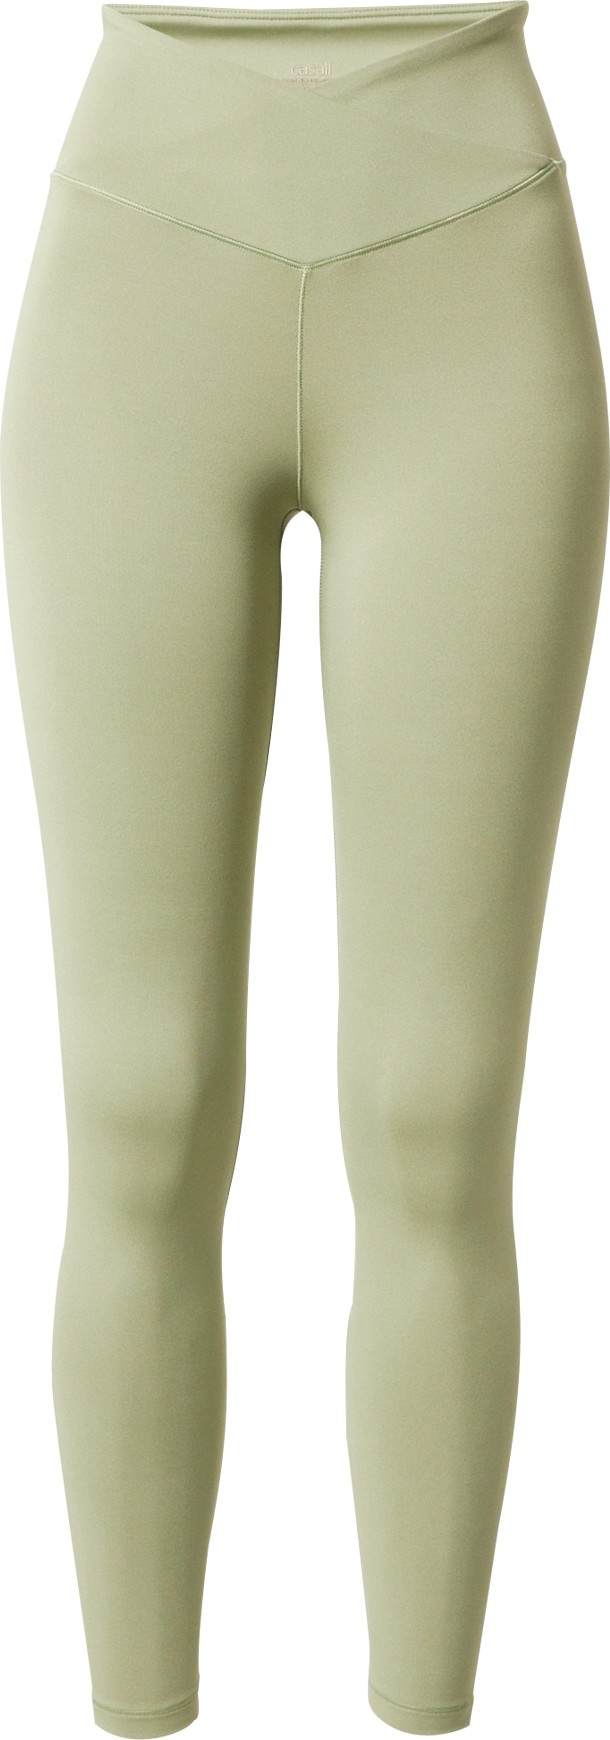 Casall Sportovní kalhoty 'Overlap' pastelově zelená